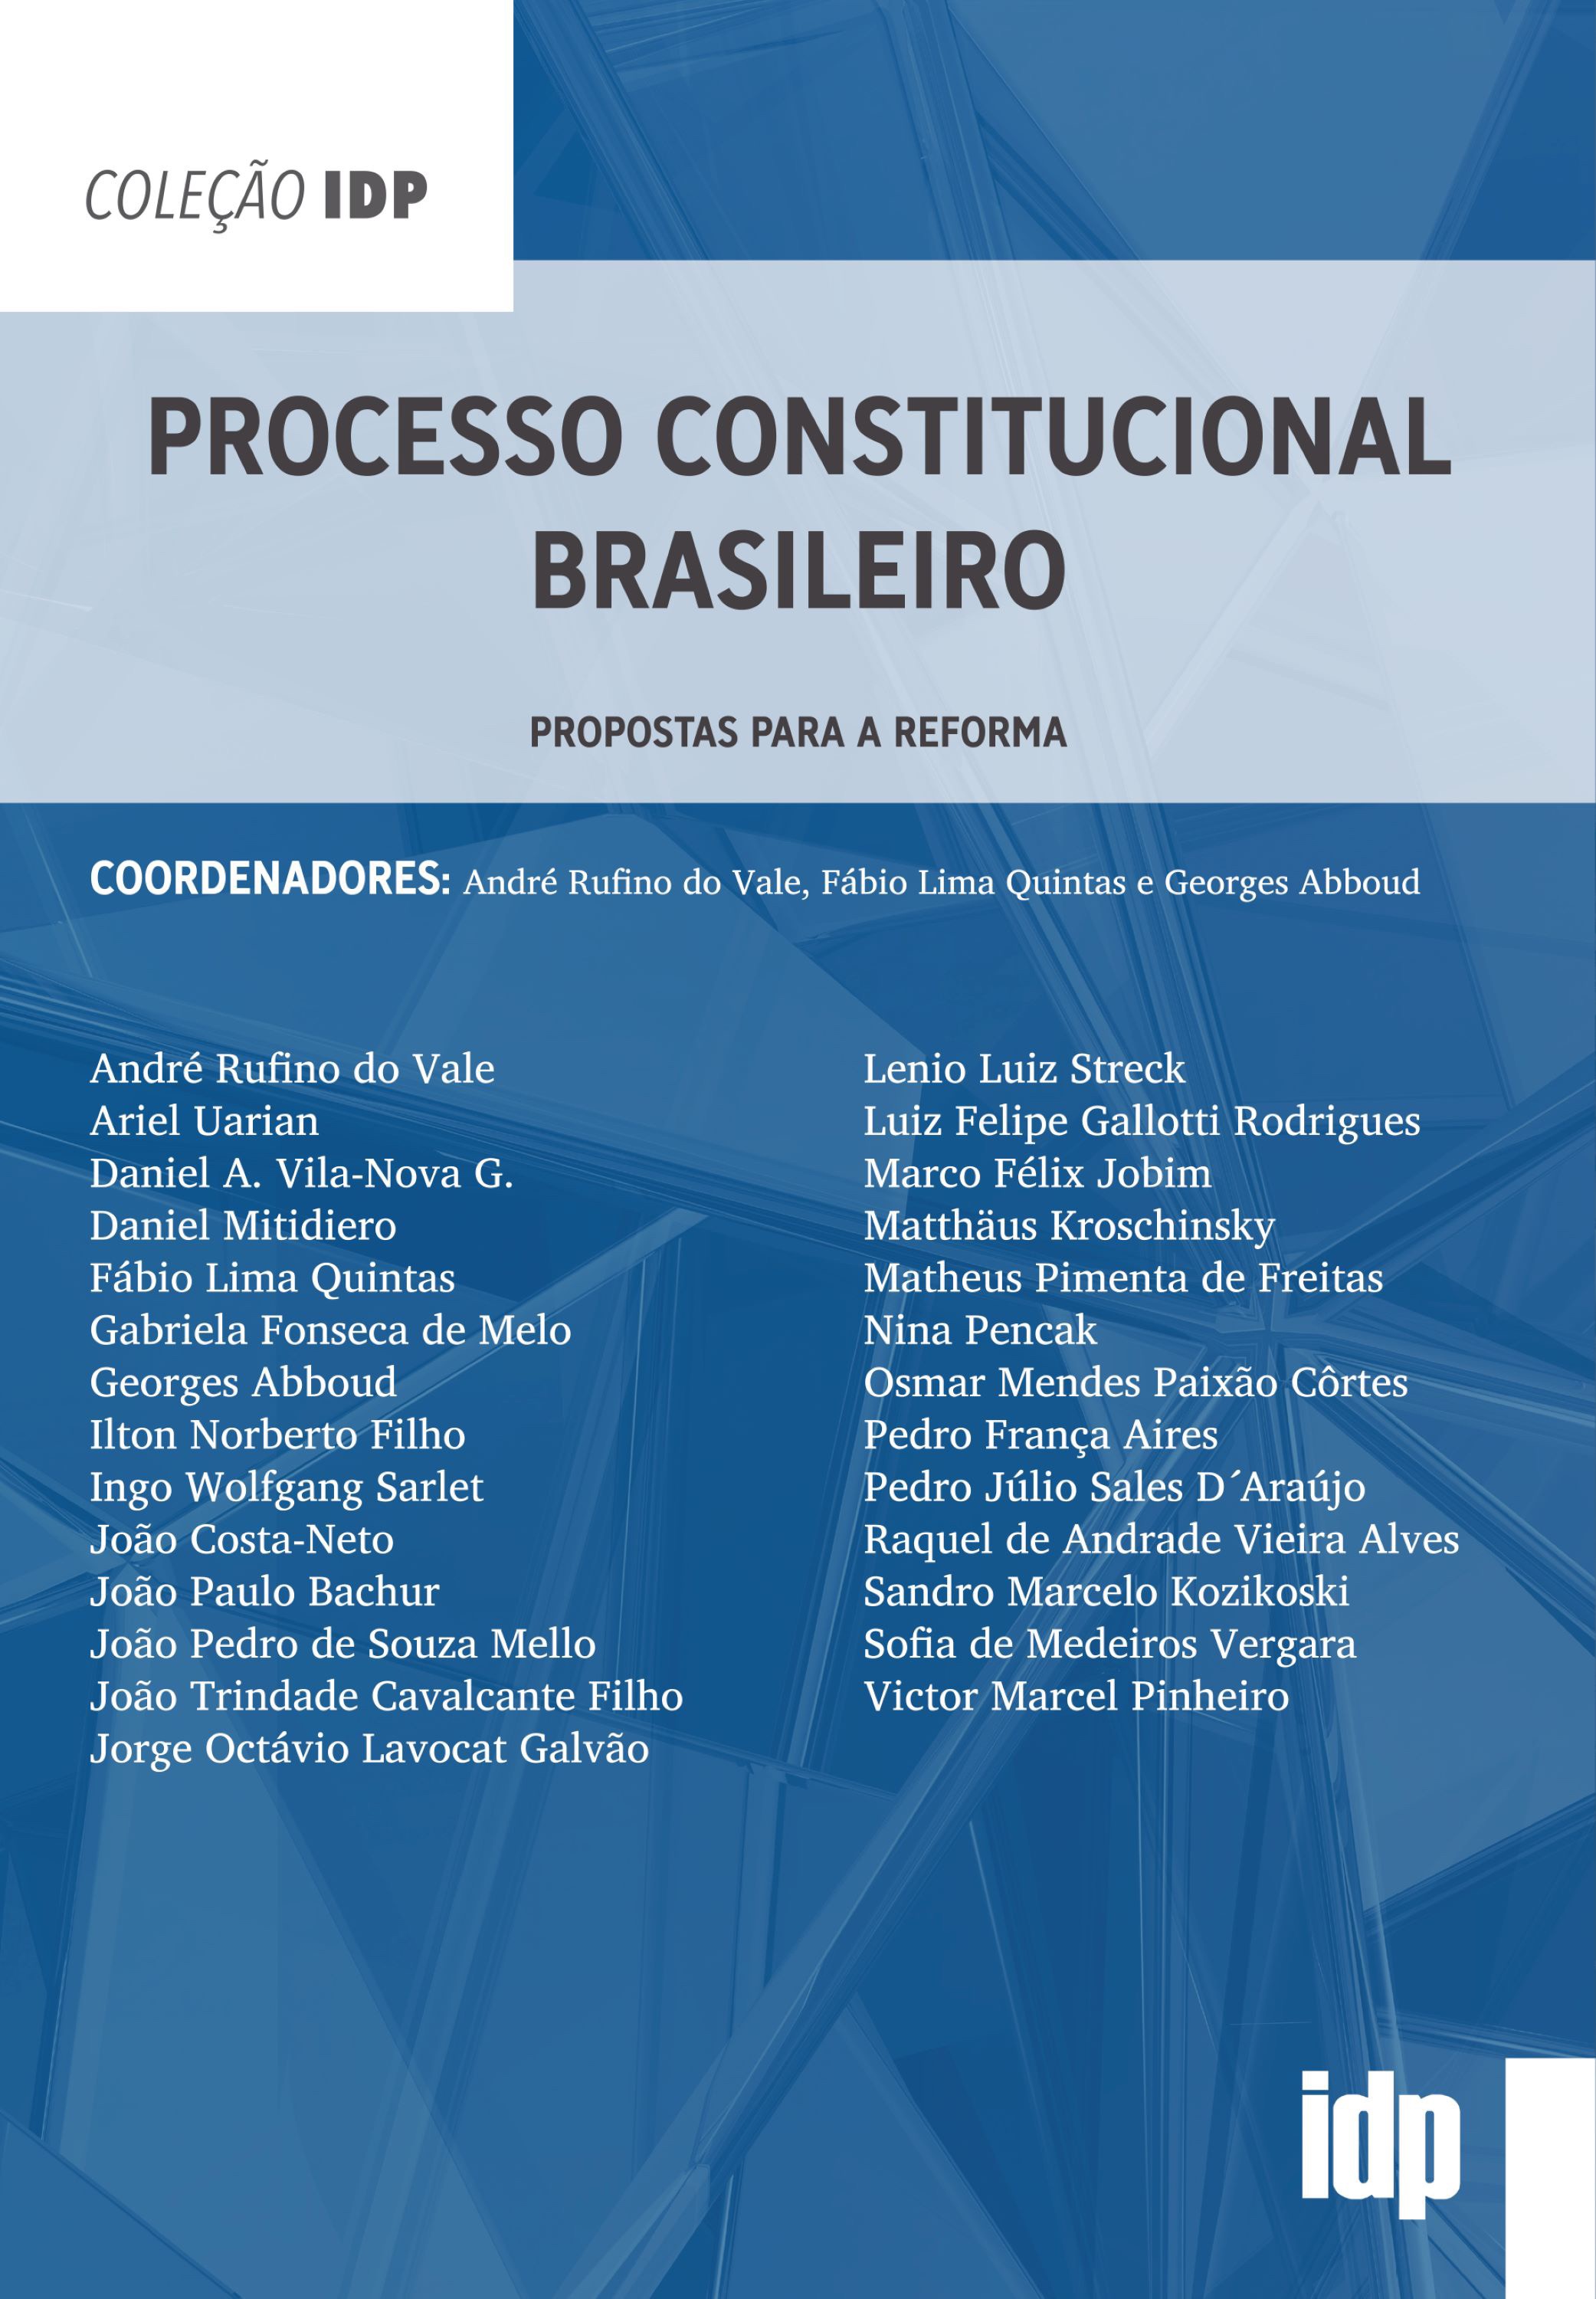 Processo Constitucional Brasileiro